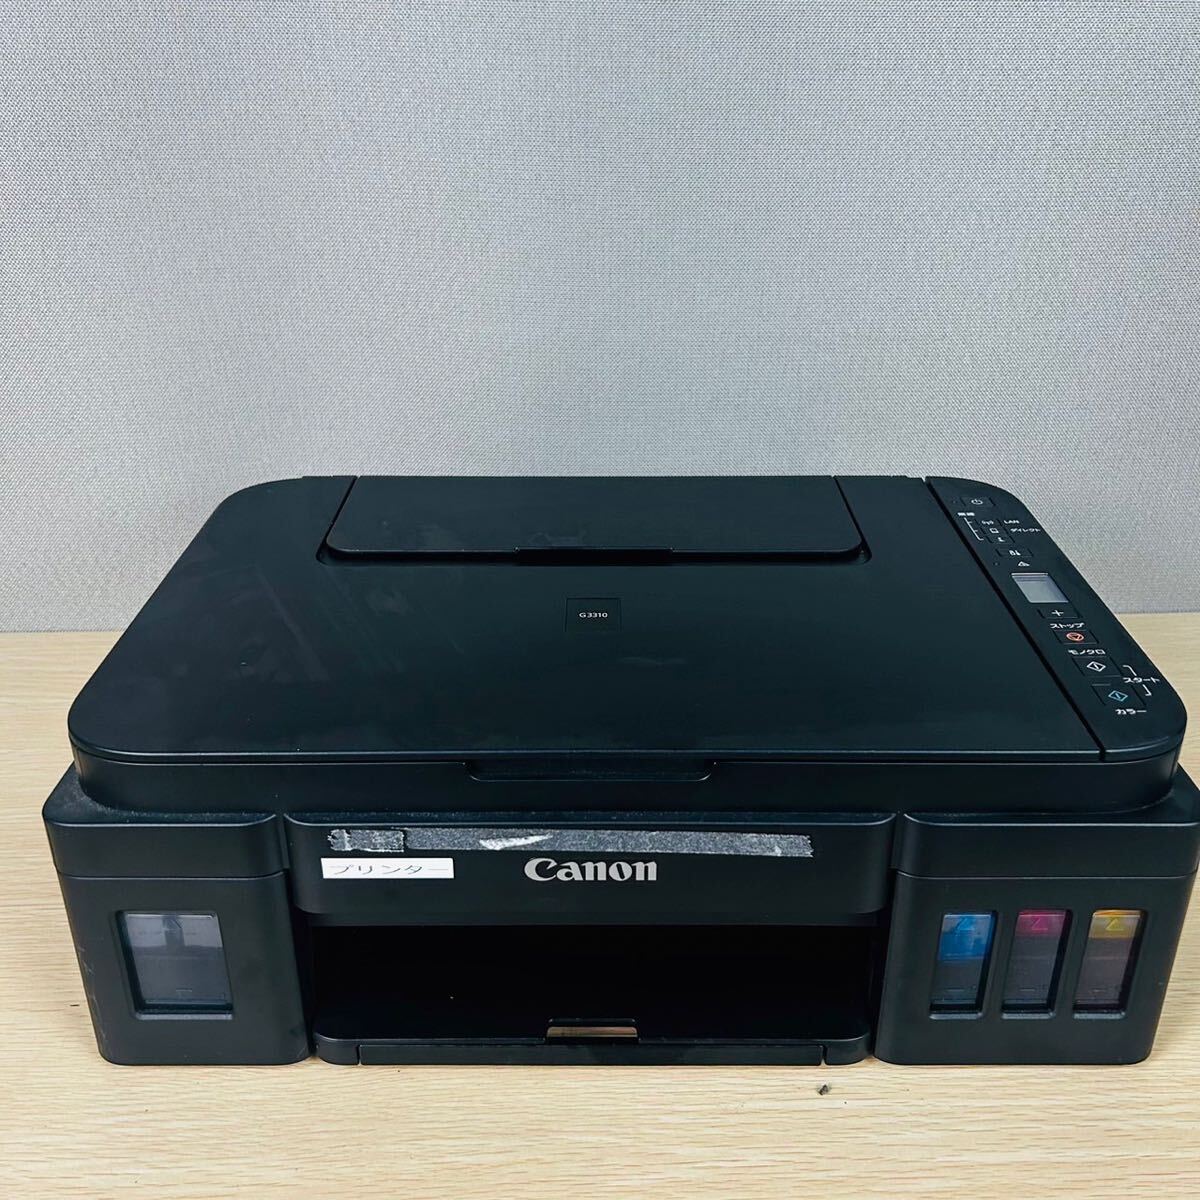 * Canon Canon K10471 струйный принтер многофункциональная машина электризация только проверка 